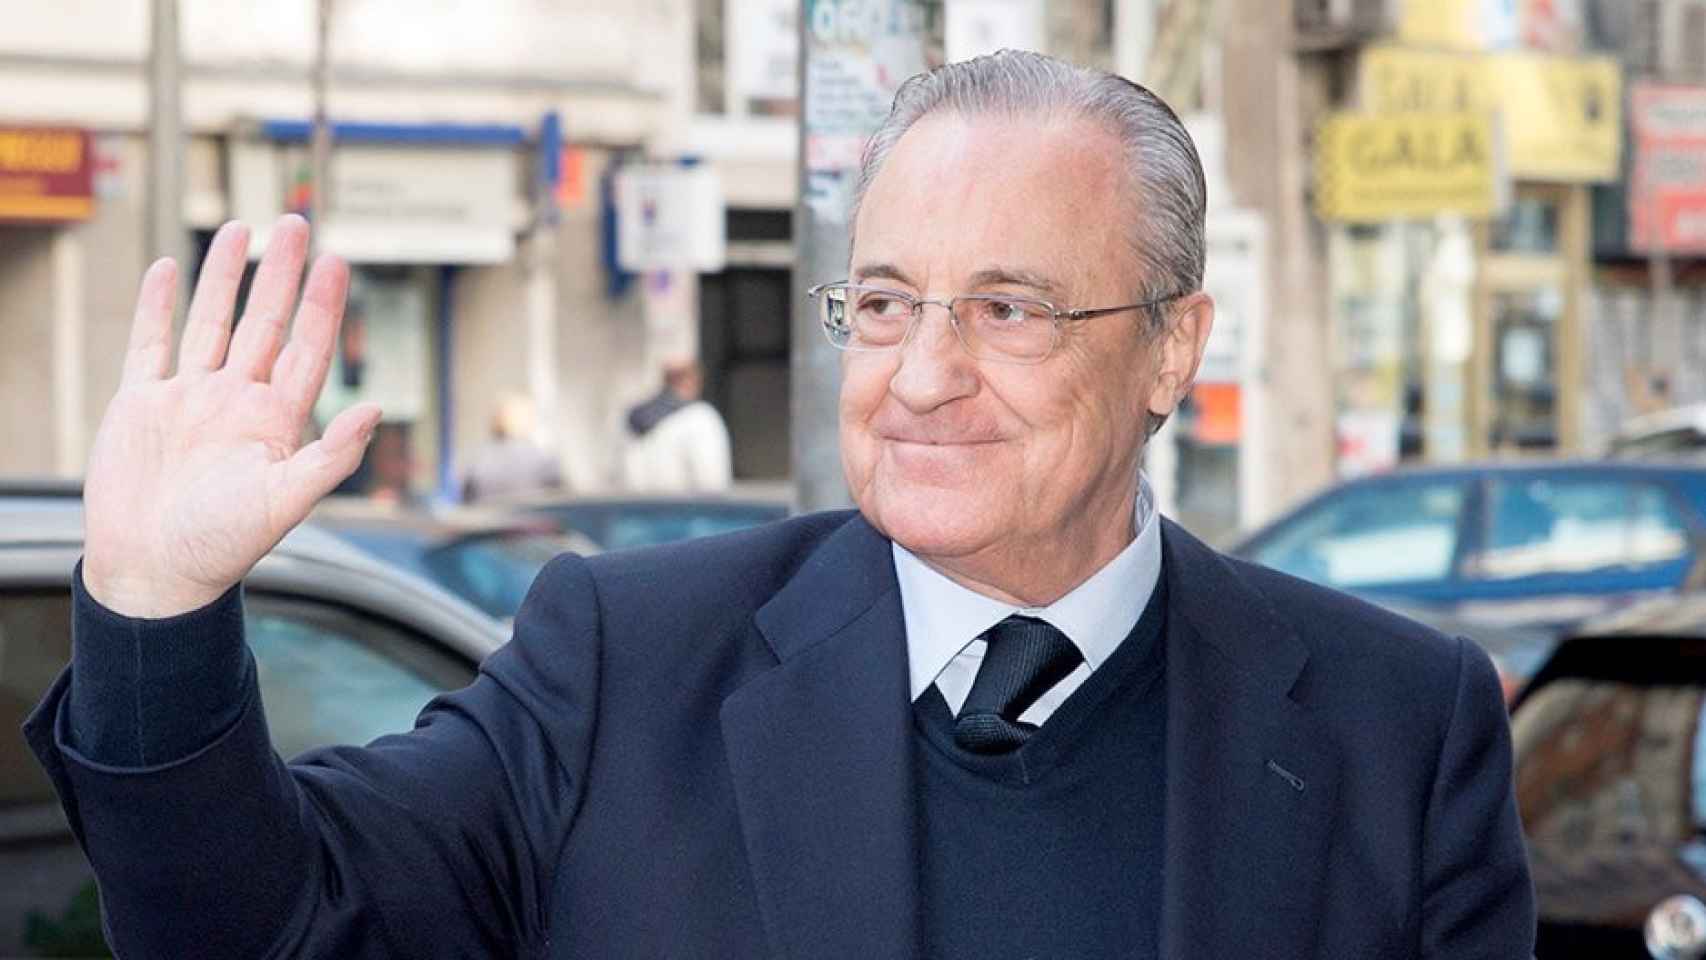 El presidente del Real Madrid, Florentino Pérez, saluda en Madrid / EFE